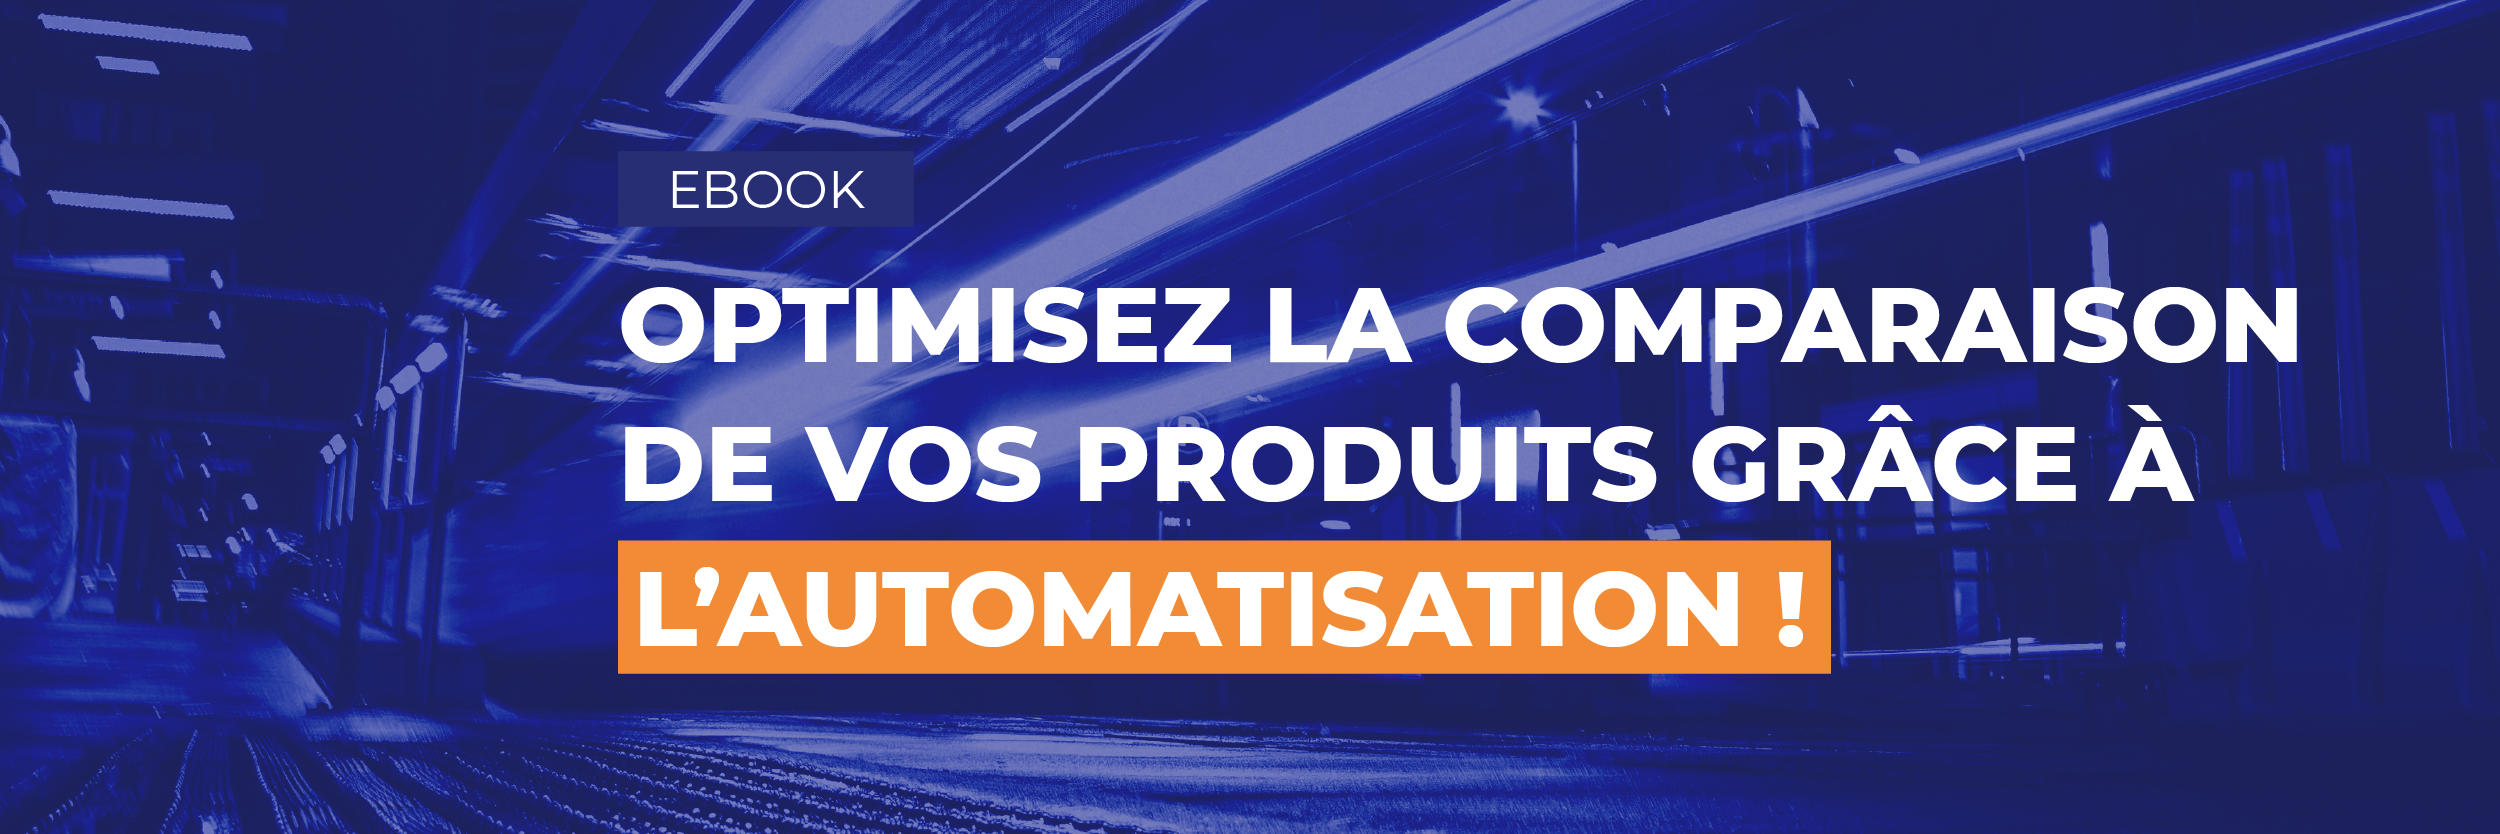 Ebook : Optimisez la comparaison de vos produits grâce à l'automatisation !